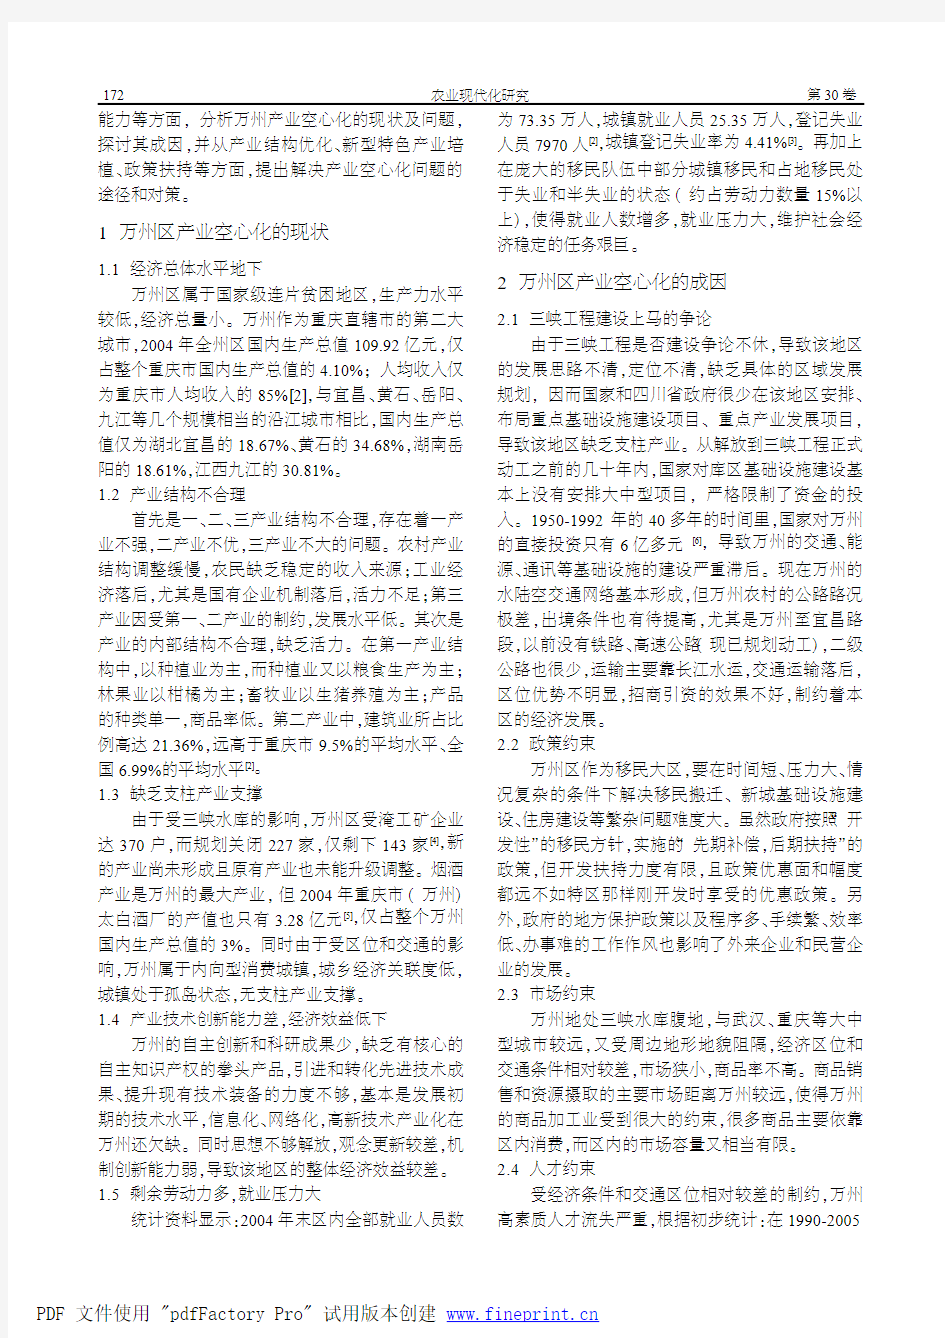 三峡重庆库区 产业空心化的成 因及对策初探